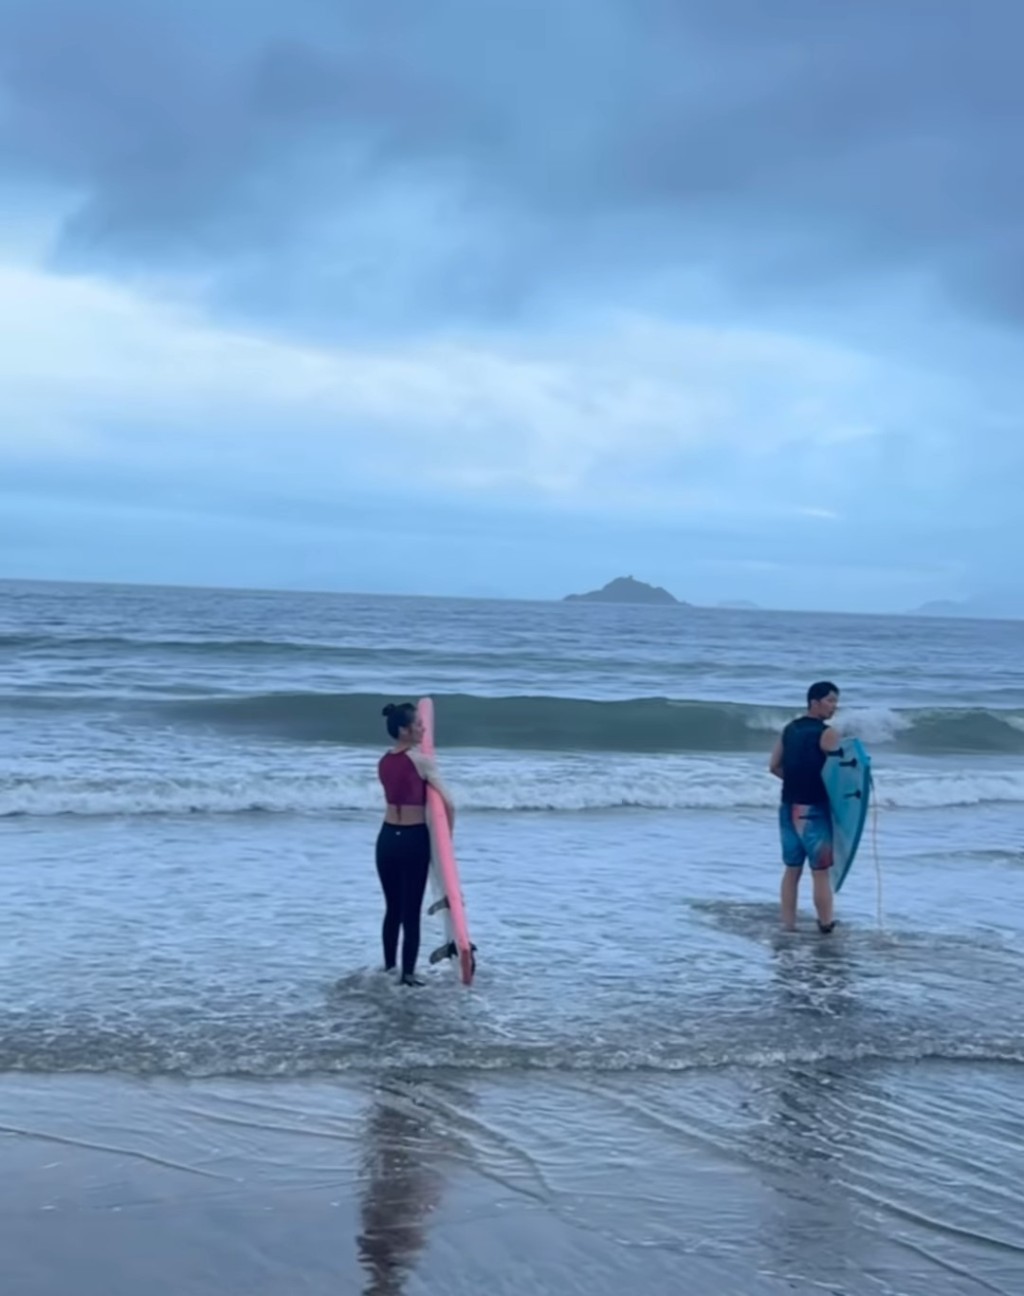 馮盈盈拿著滑浪板跟隨著型男到海邊滑浪。